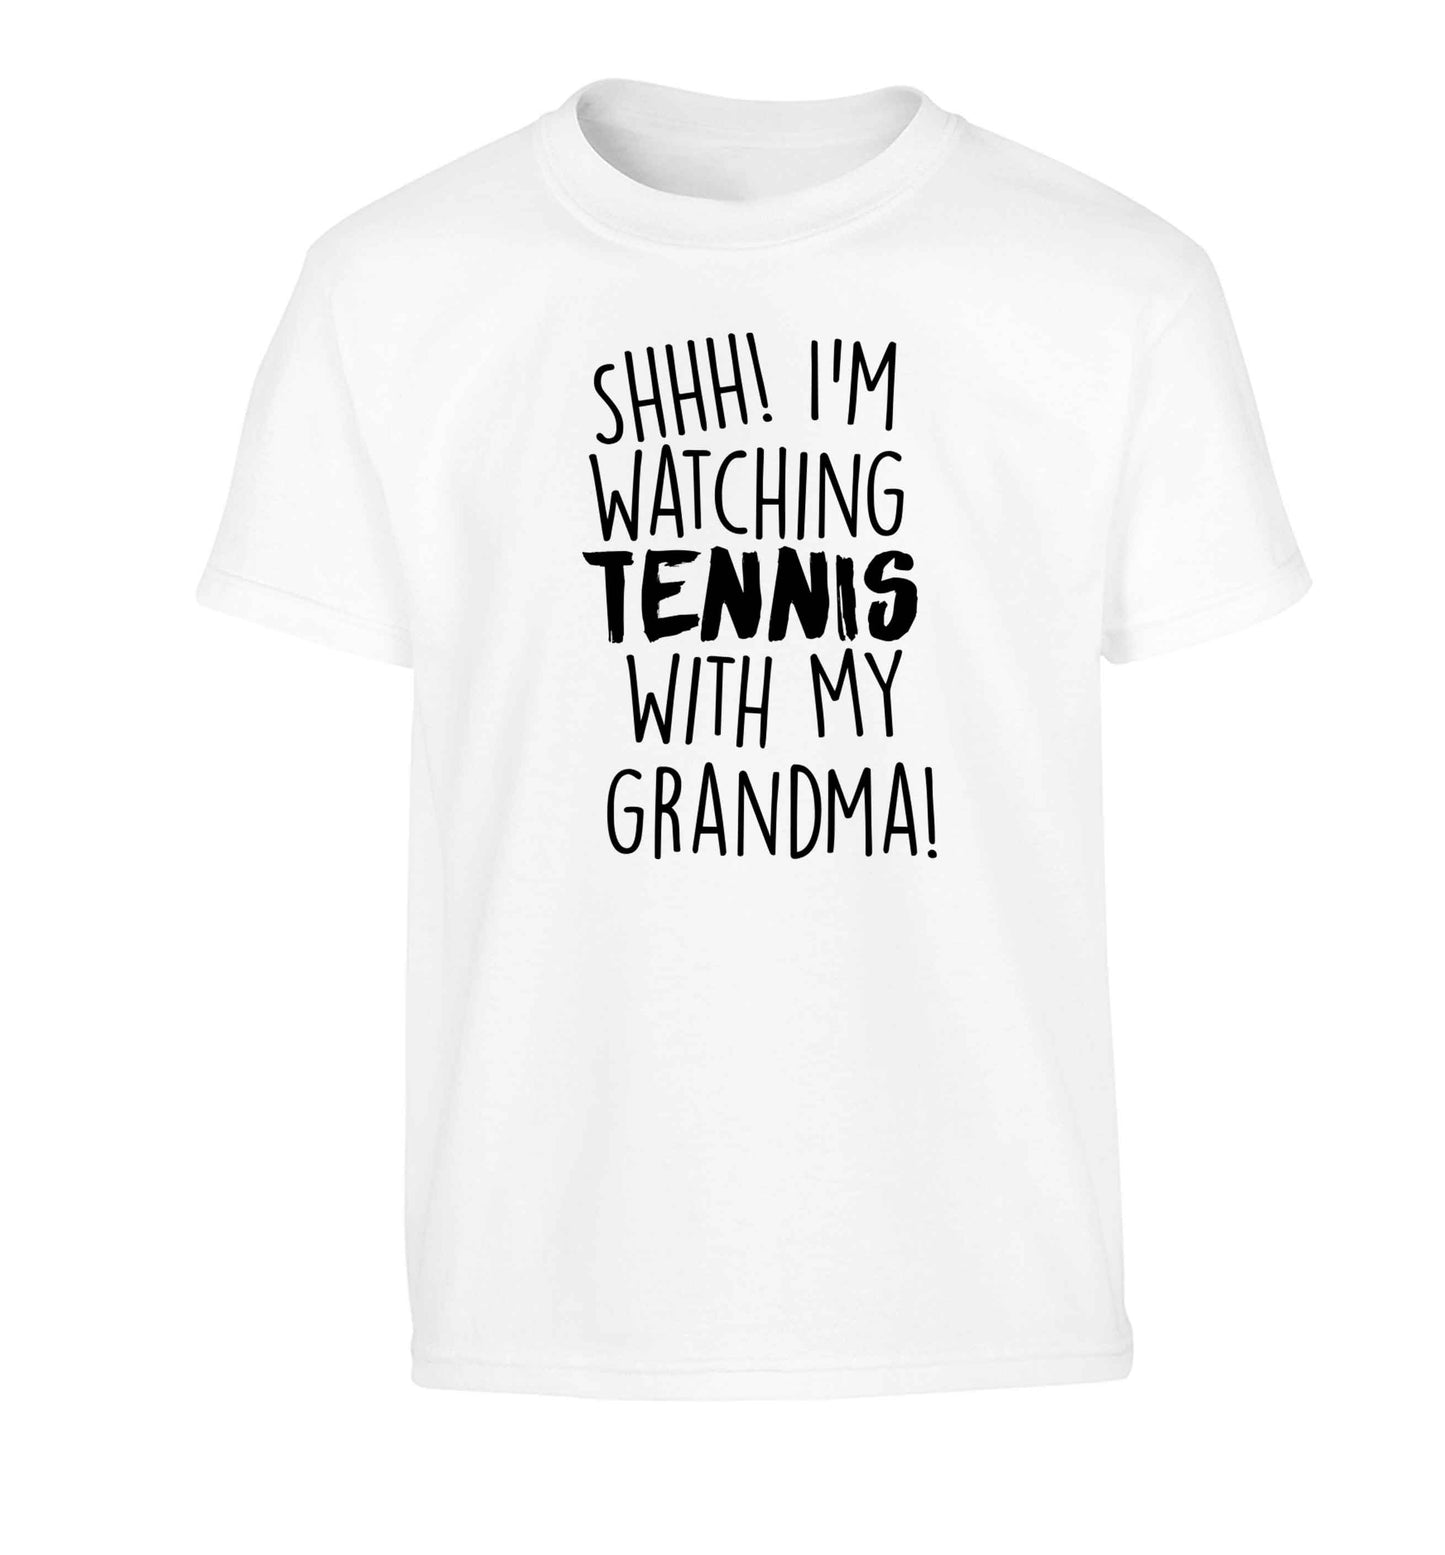 Shh! I'm watching tennis with my grandma! Children's white Tshirt 12-13 Years